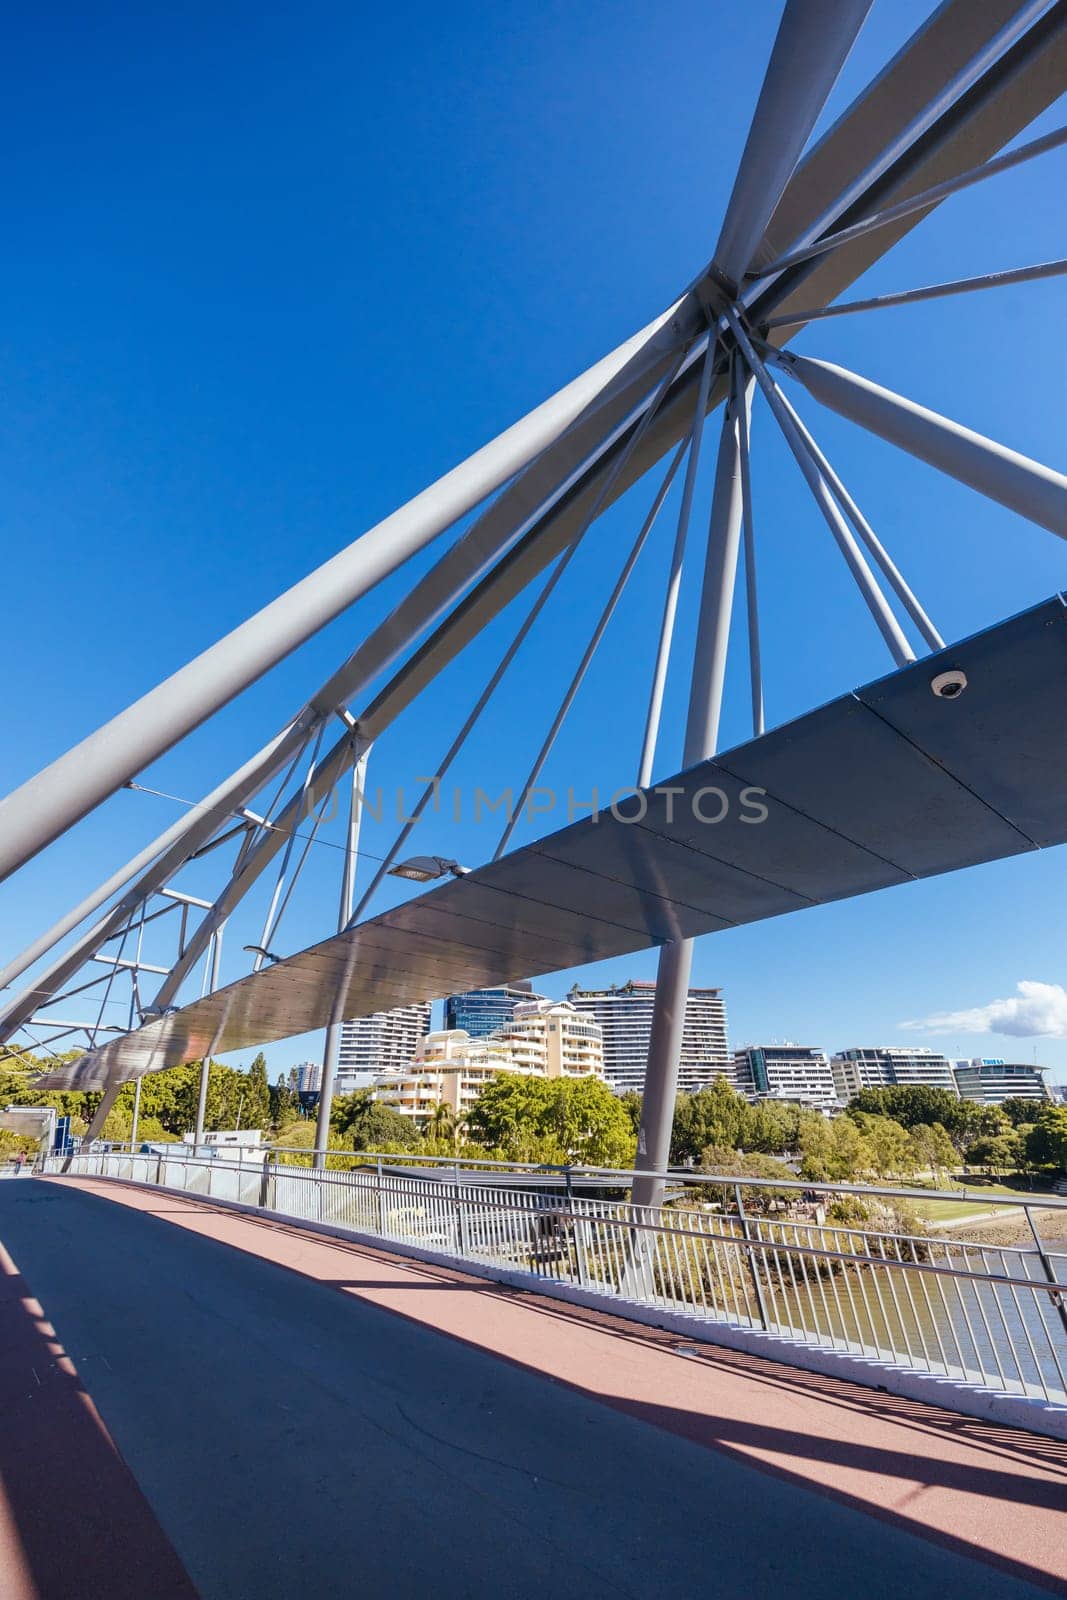 Goodwill Bridge in Brisbane Australia by FiledIMAGE